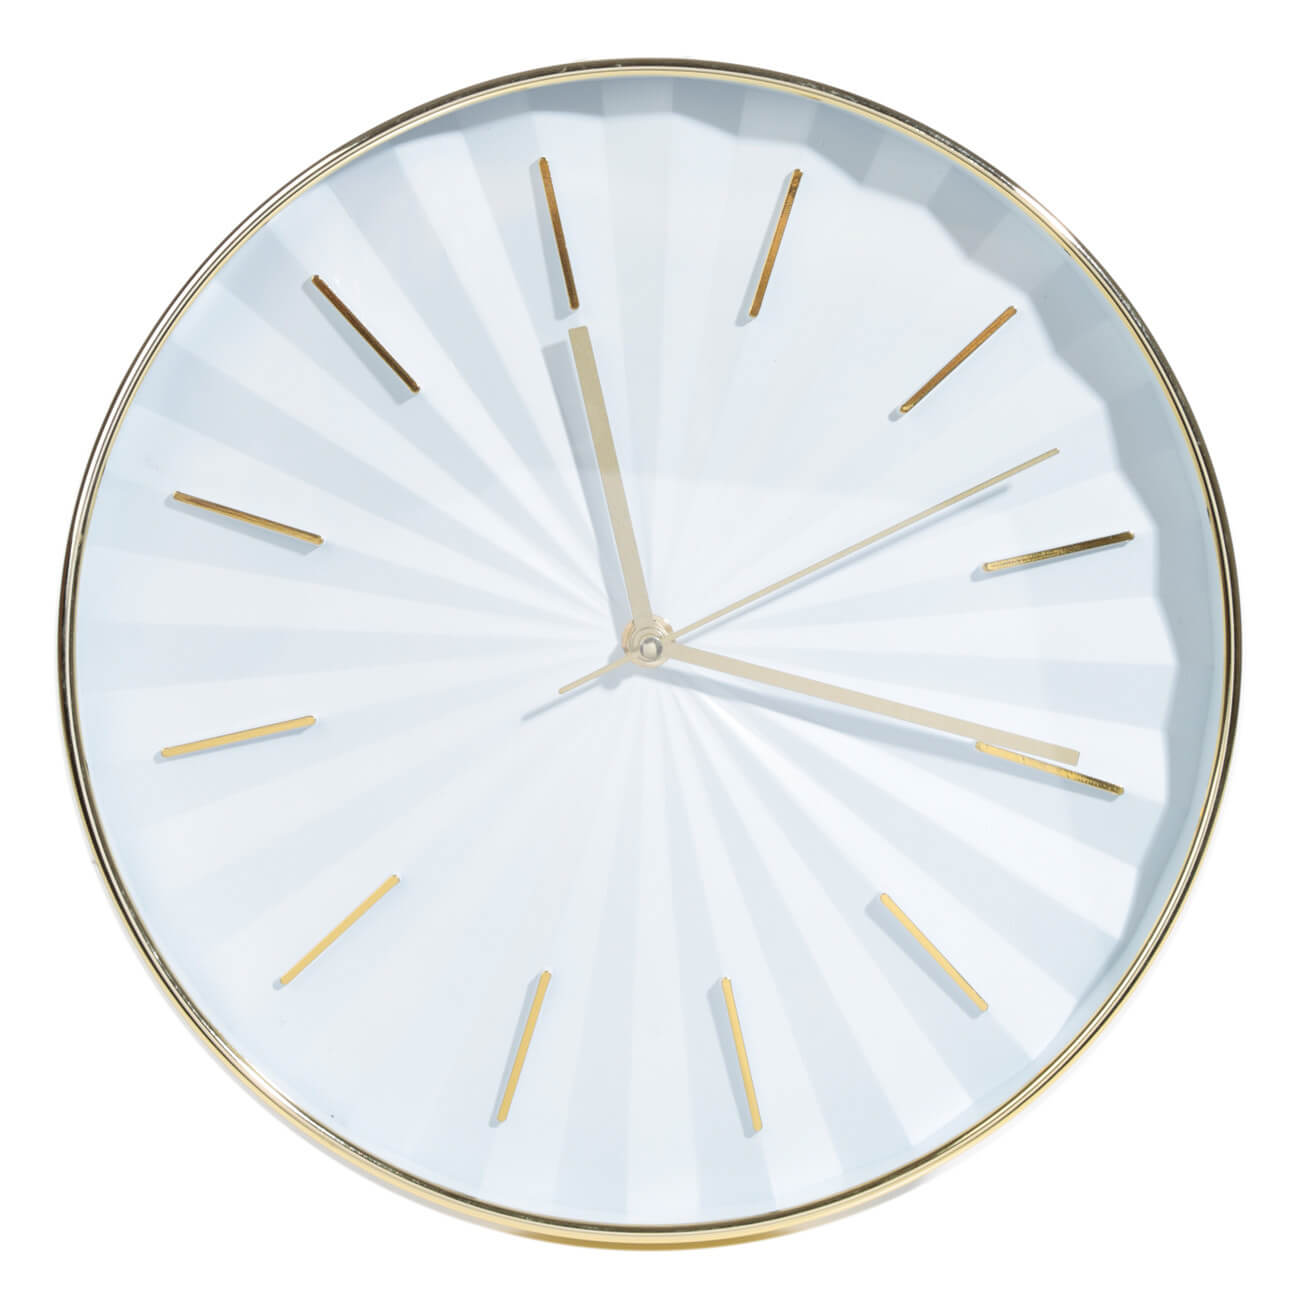 Часы настенные, 30 см, пластик, круглые, золотисто-белые, Fantastic gold часы настенные vigor д 30 герб